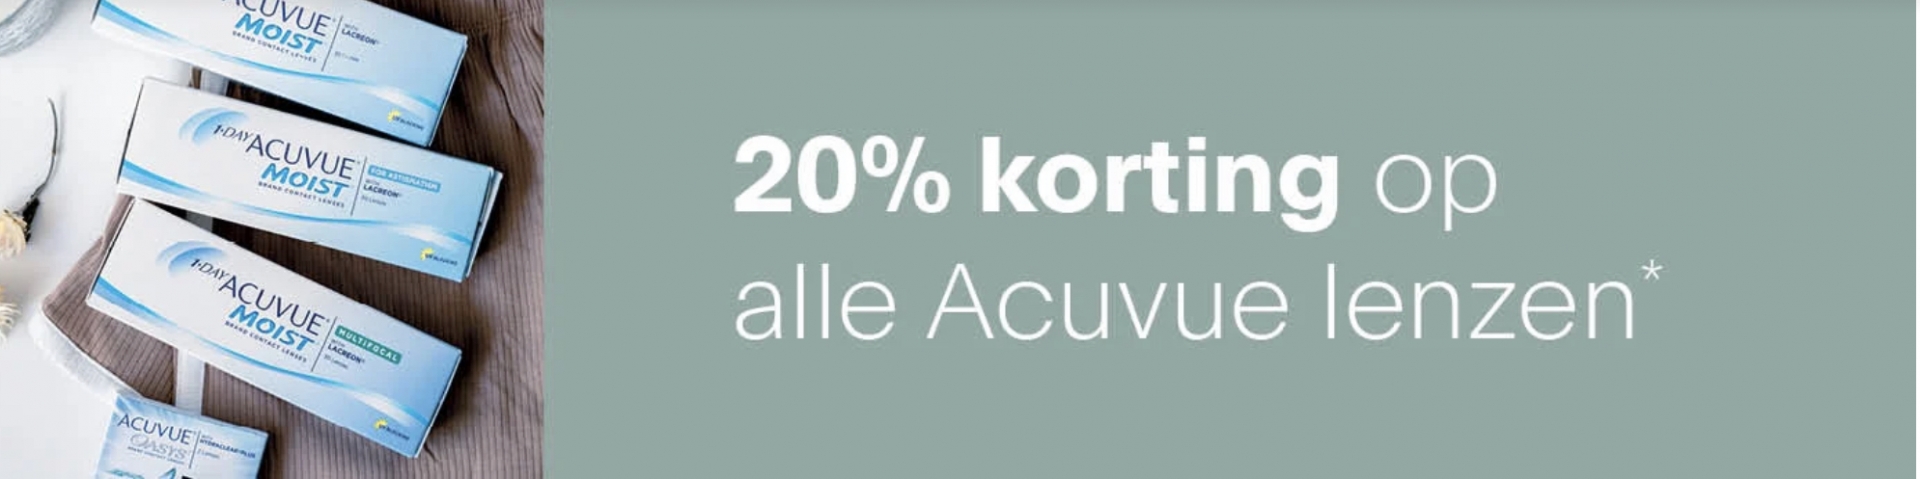 Tijdelijk 20% korting op alle Acuvue lenzen!